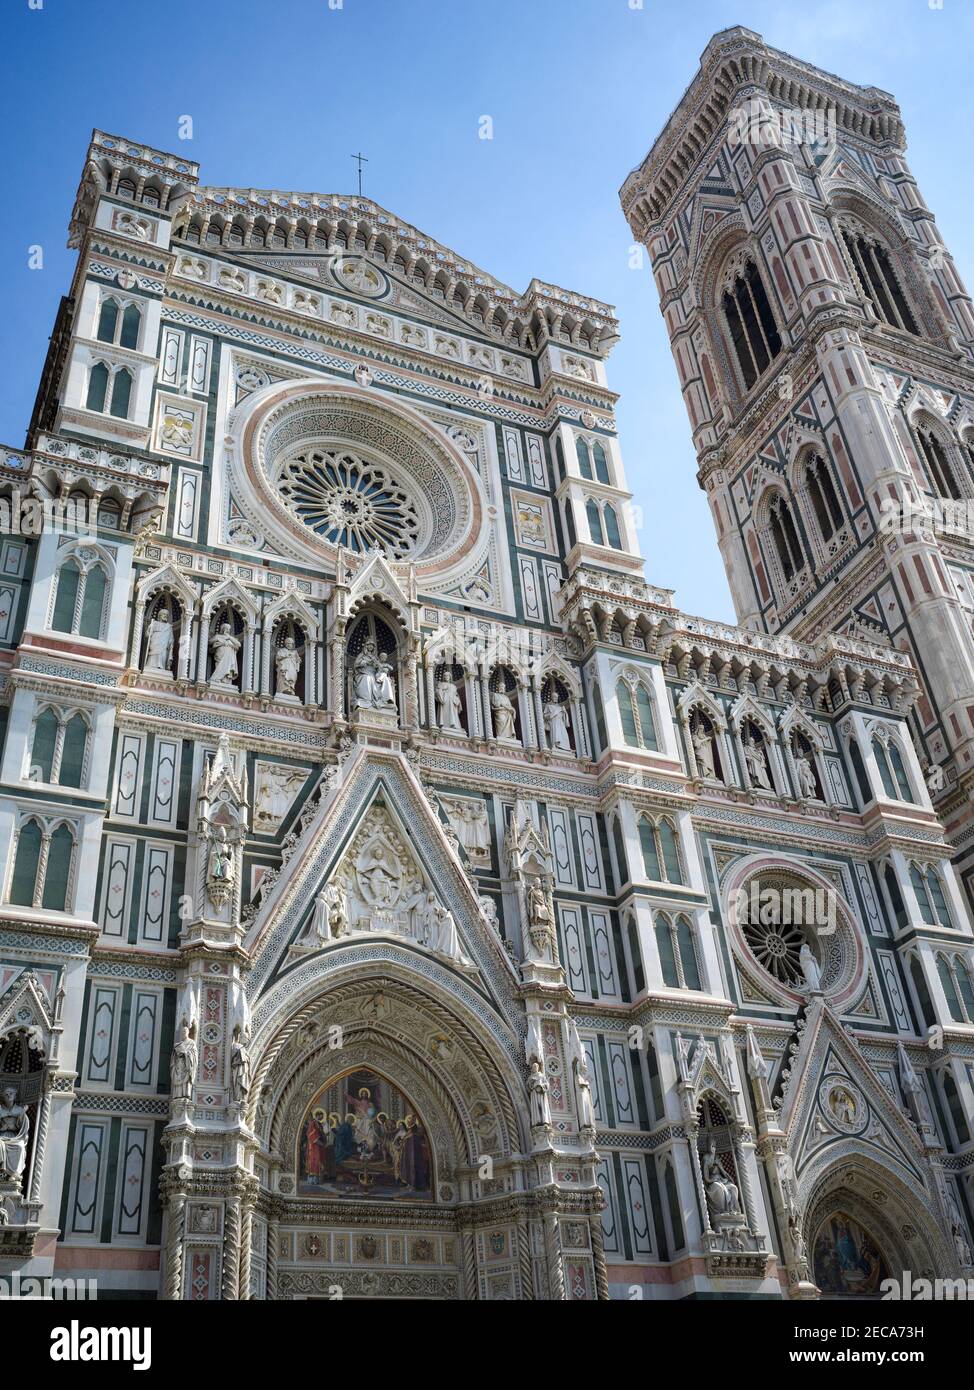 Cathédrale de Florence dédiée à Santa Maria del Fiore avec Clocher de Giotto également visible Banque D'Images